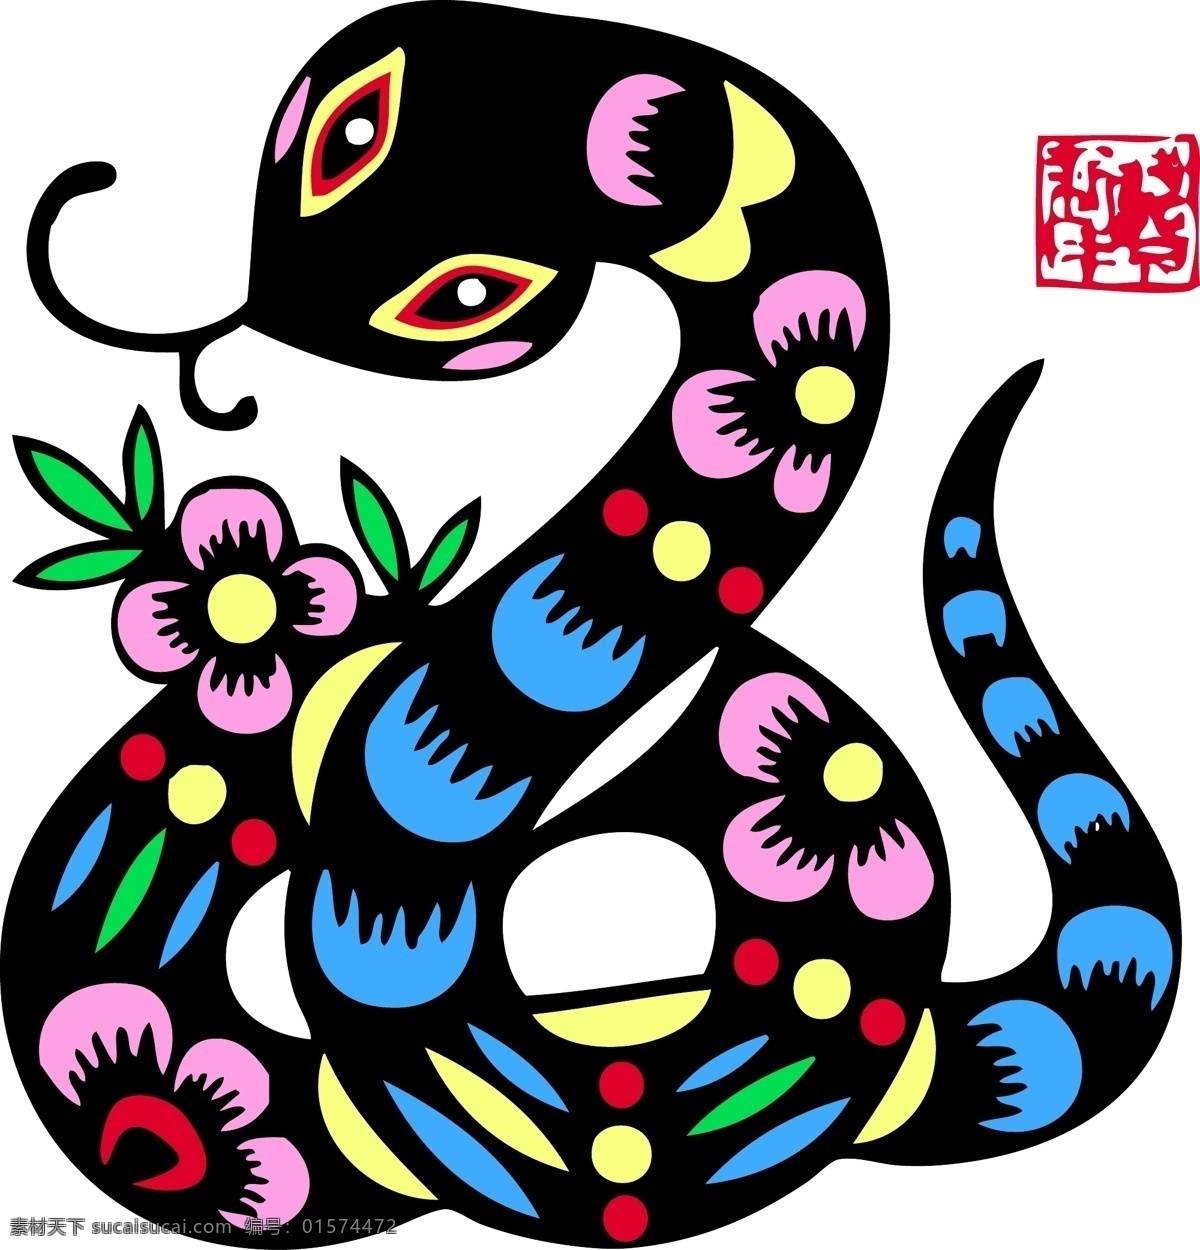 年画 风格 蛇 画 矢量 花纹 动物 野生动物 花卉 花朵 剪影 创意 卡通 插画 背景 海报 画册 印章 矢量动物 生物世界